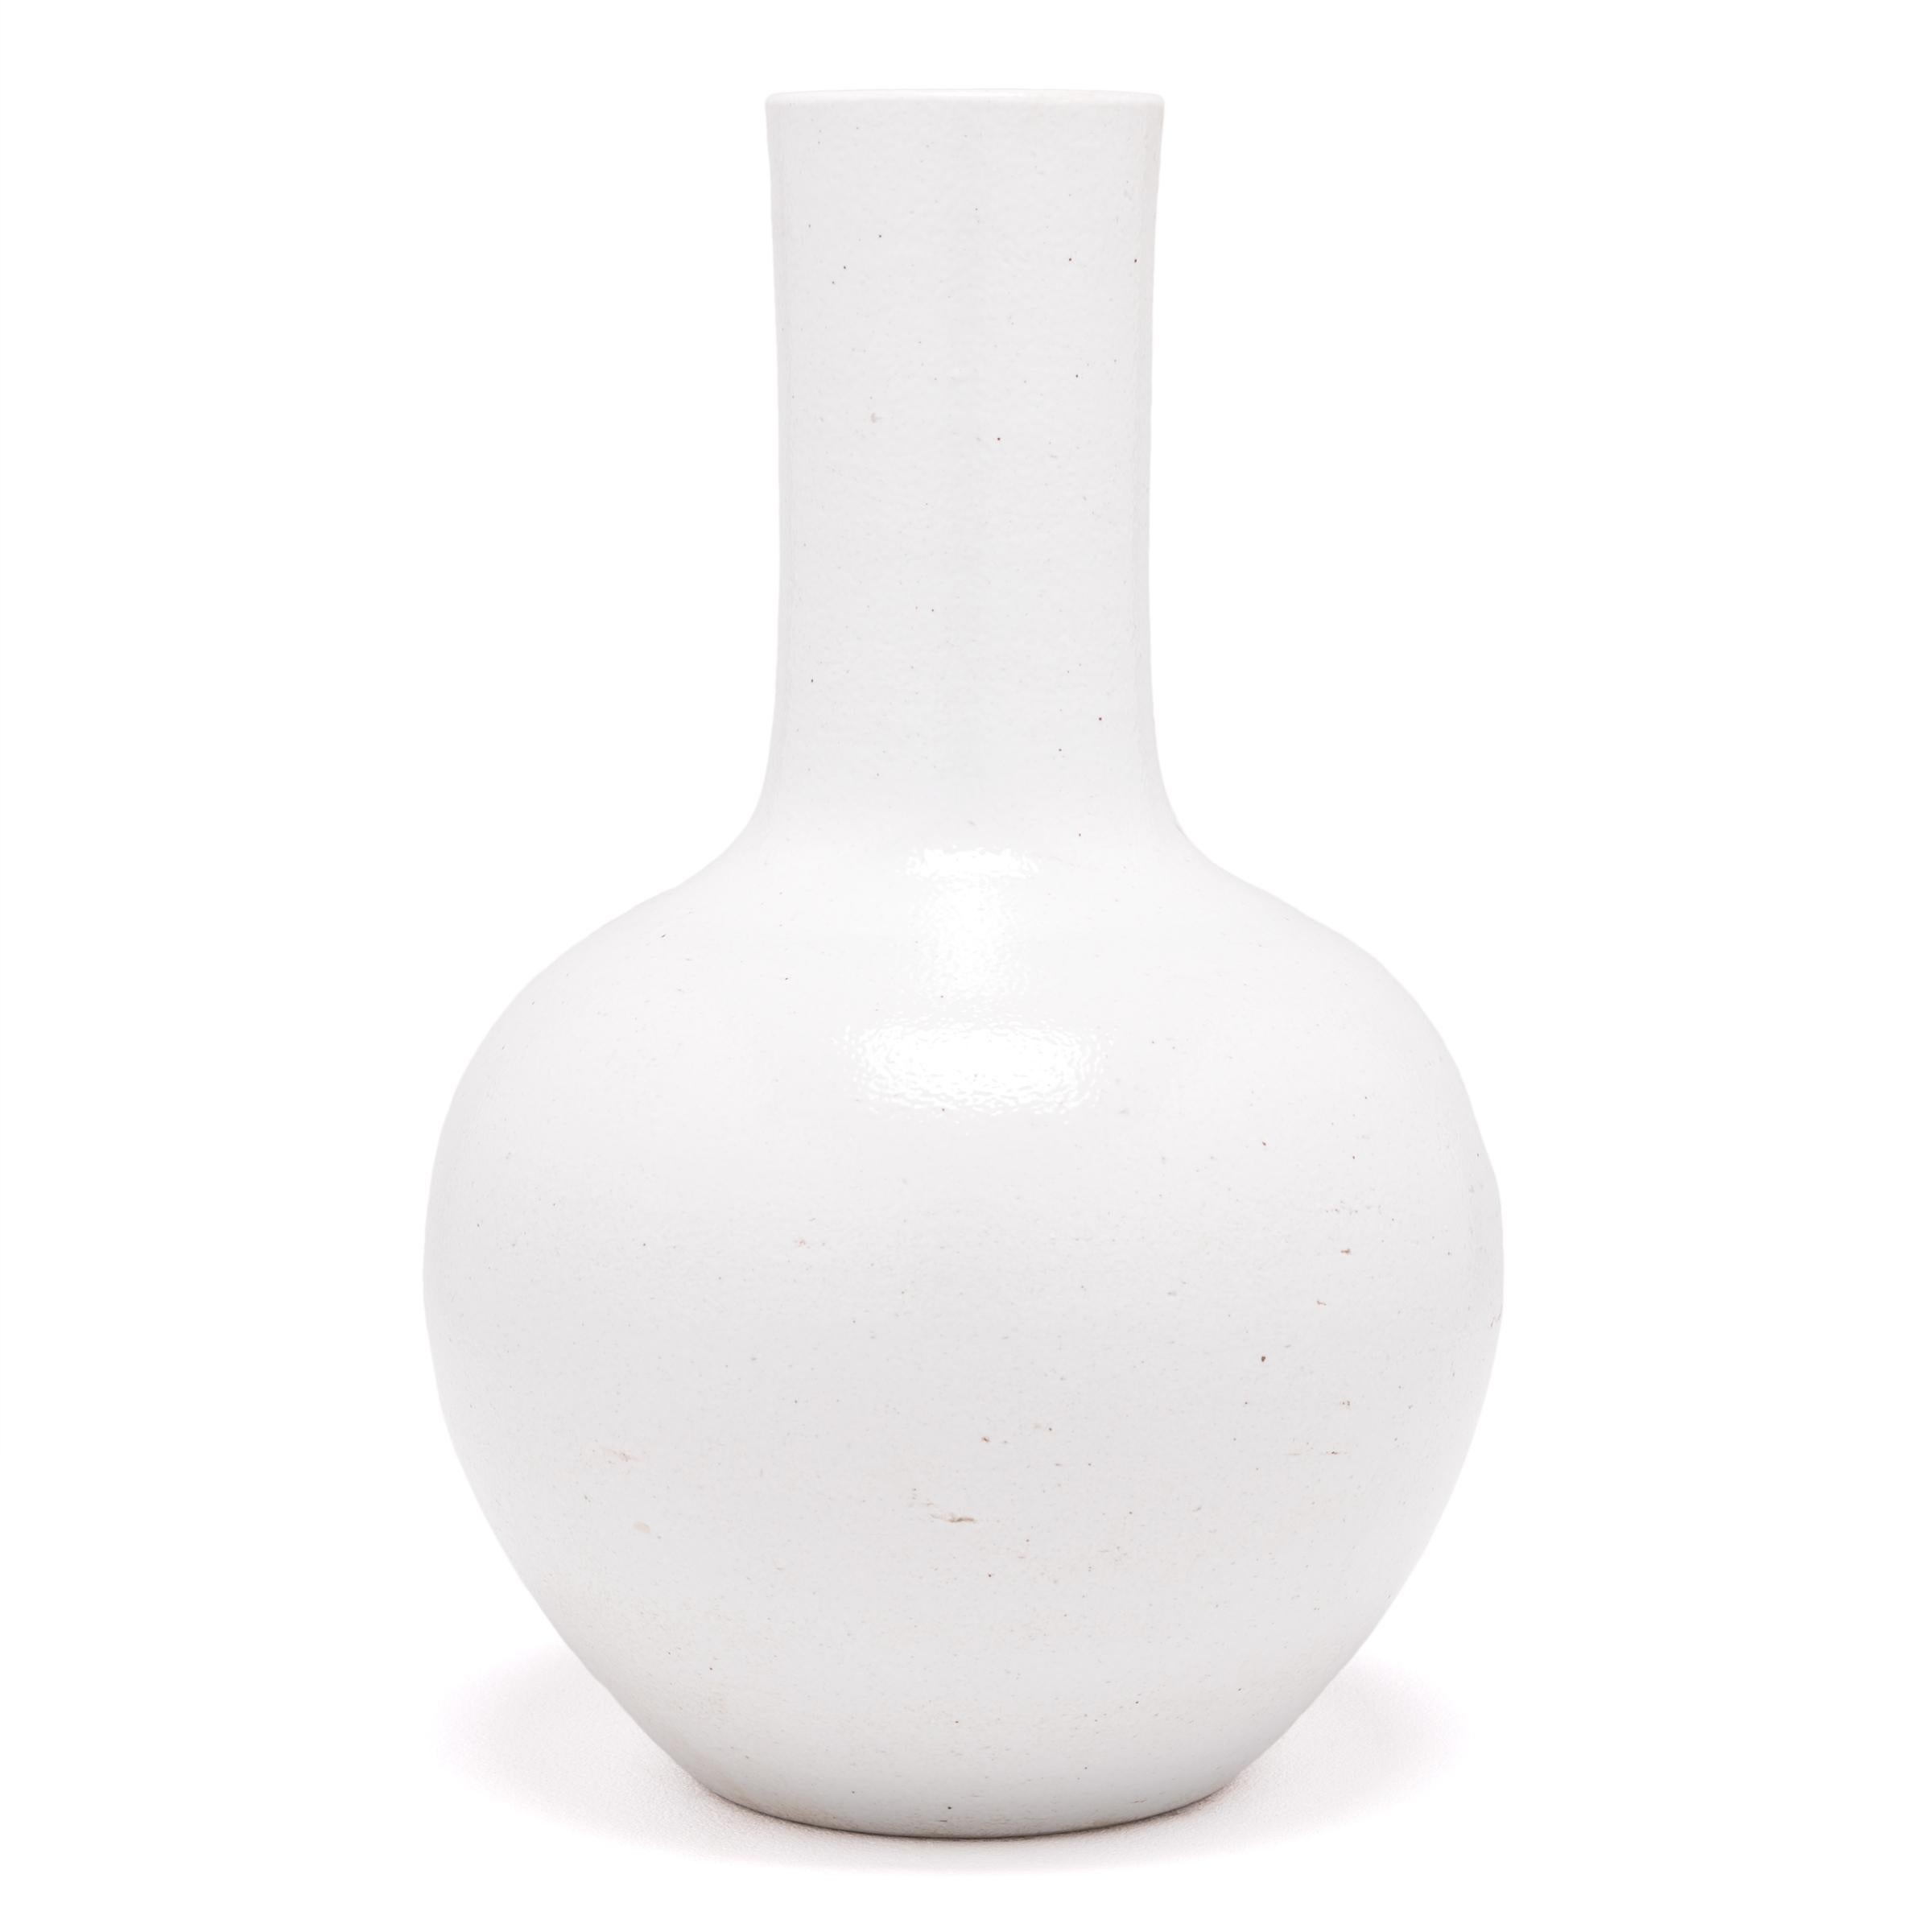 S'inspirant d'une longue tradition chinoise de la céramique, ce vase à long col est recouvert d'une glaçure blanche laiteuse. Sculpté par des artisans de la province chinoise de Jiangxi, ce vase réinterprète la forme traditionnelle du col de cygne,